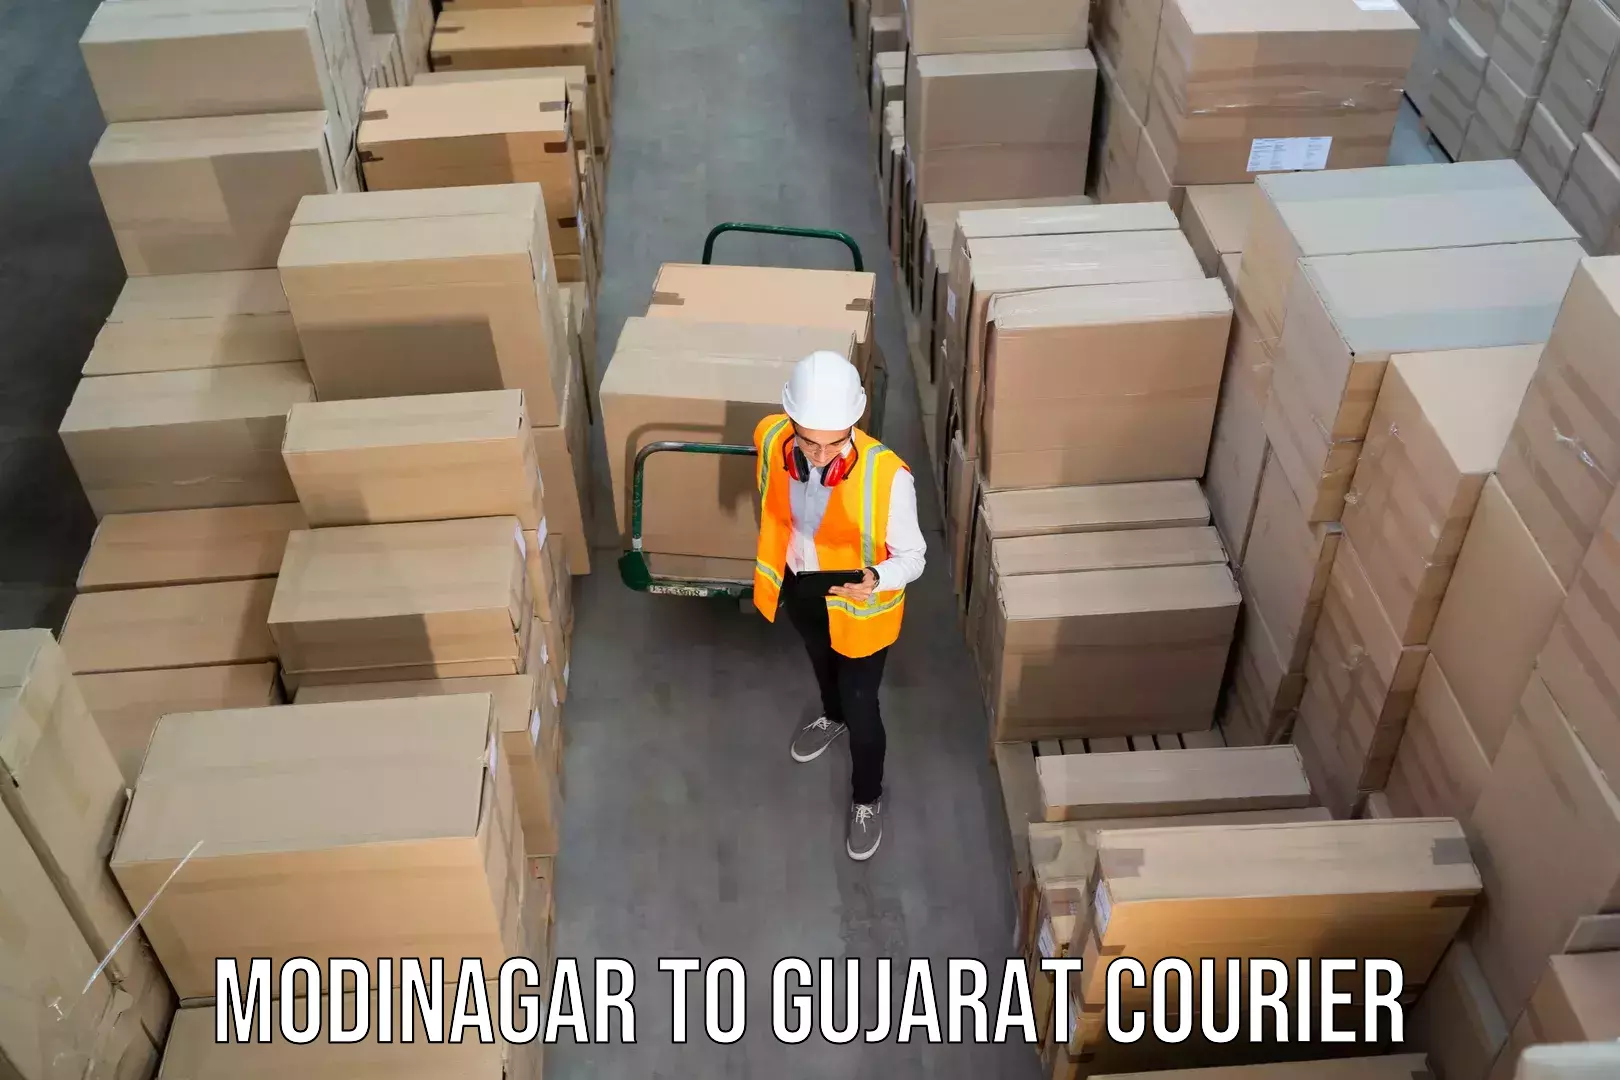 Professional courier services Modinagar to Valsad